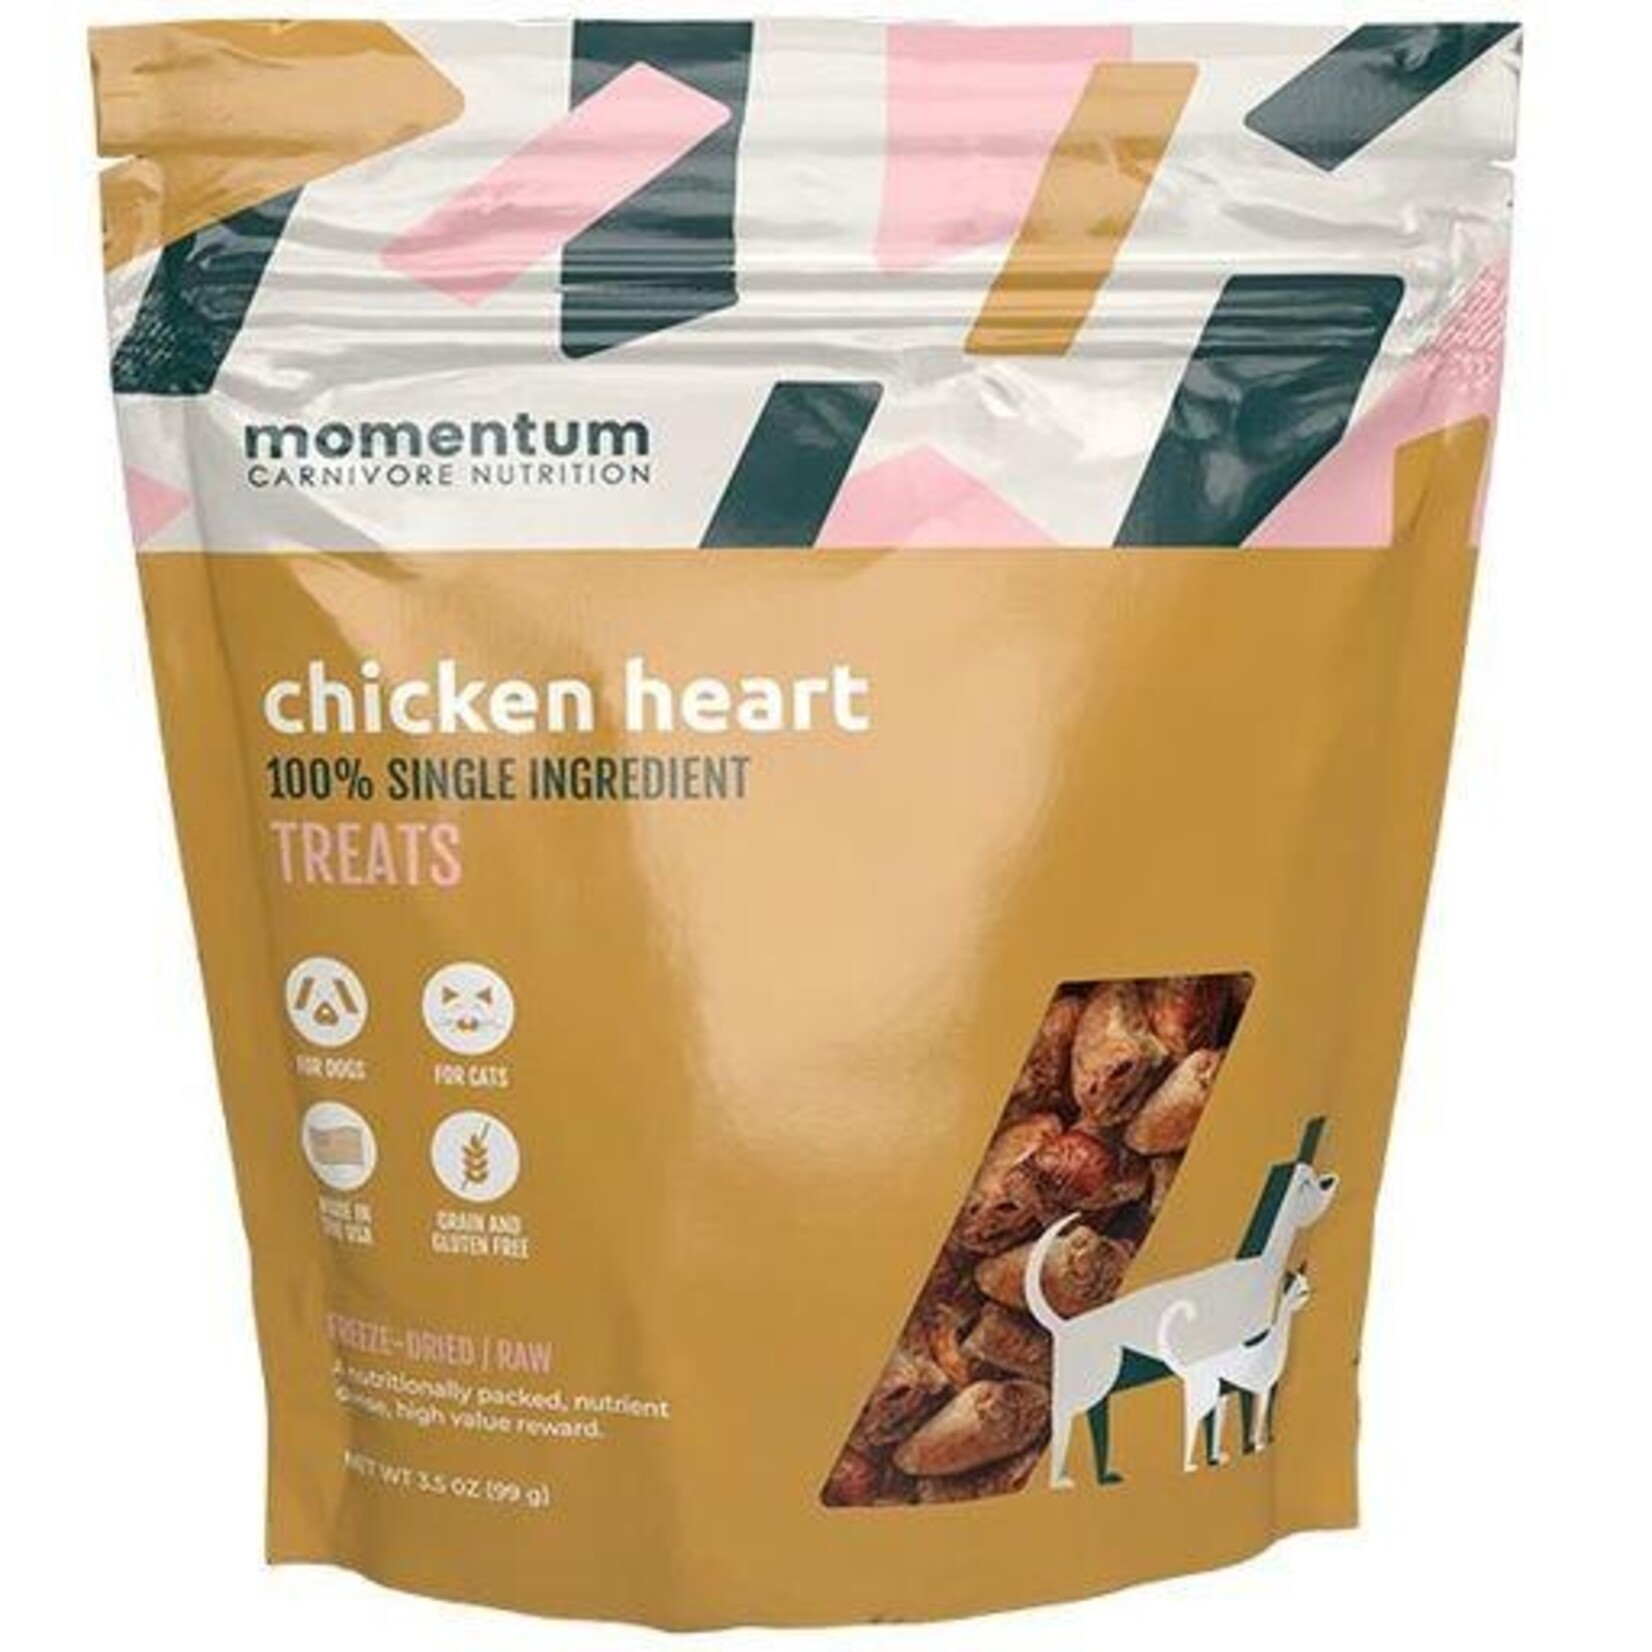 Momentum Carnivore Nutrition 3.5 oz. - Chicken Hearts - Freeze Dried Treats - Momentum / Moretti's